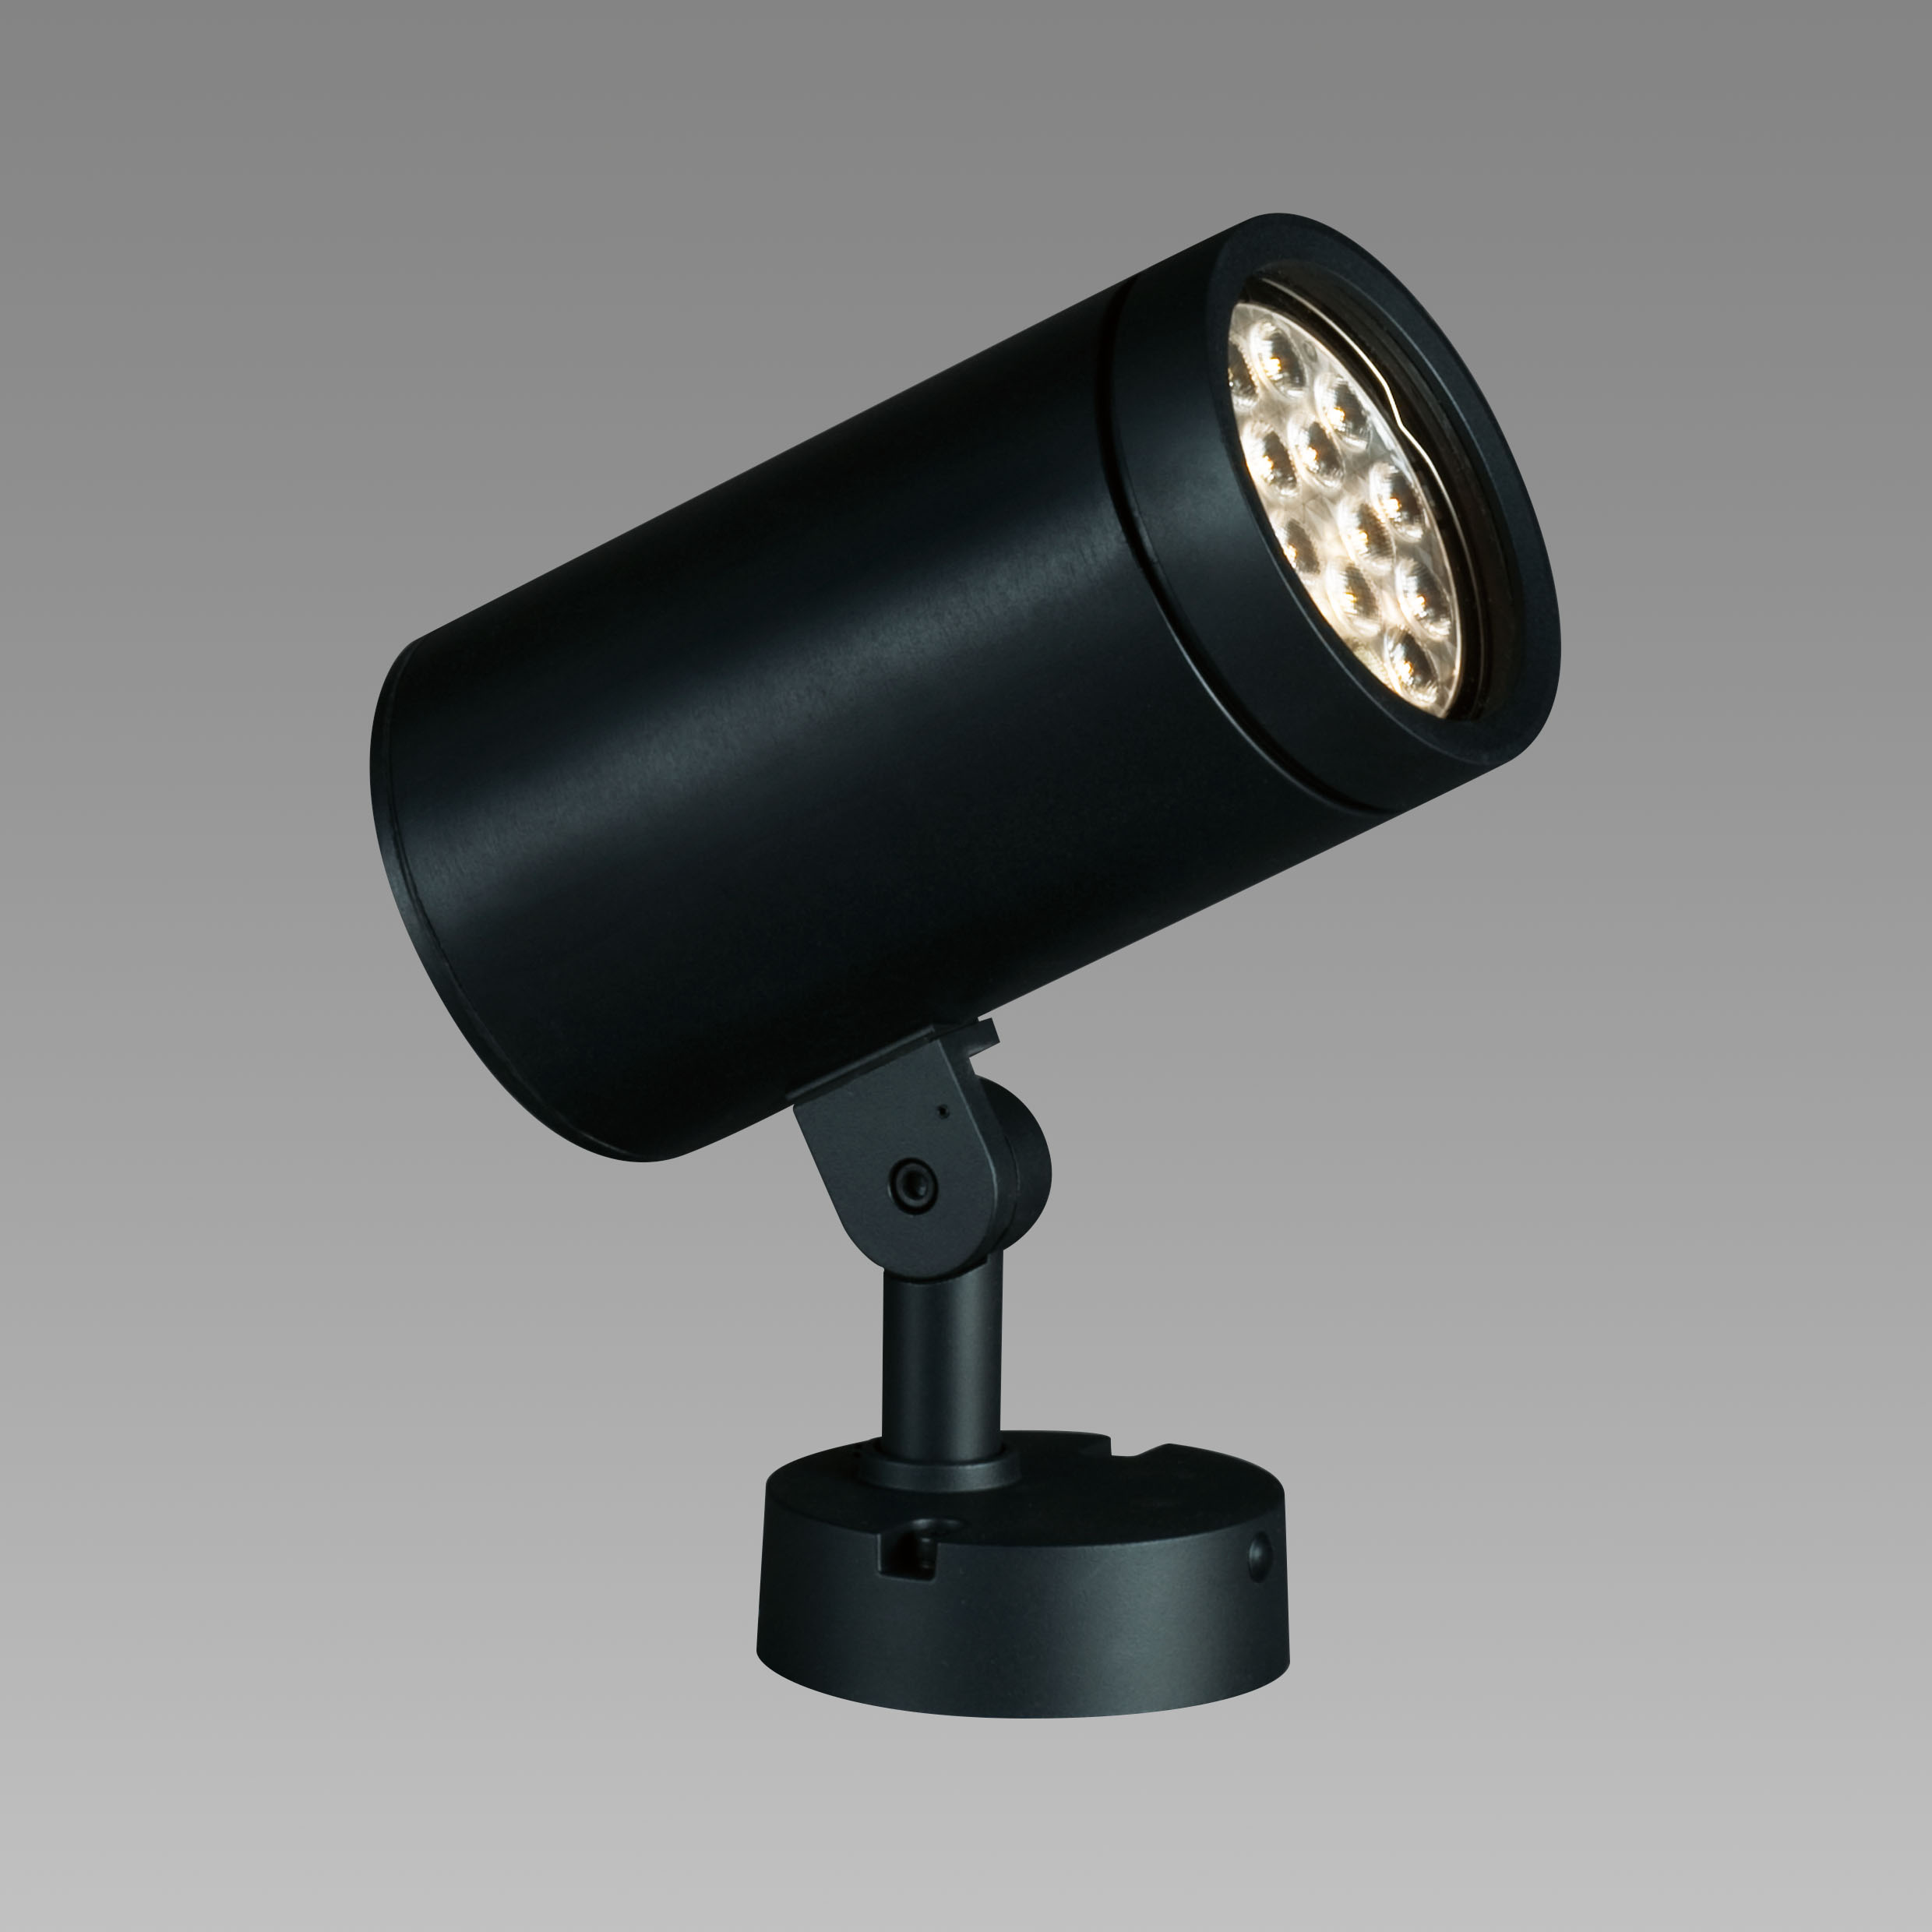 山田照明 山田照明 Compact Spot Neo（コンパクト・スポット・ネオ） 屋外用スポットライト 黒色 LED 電球色 調光 64度 AD -3146-L